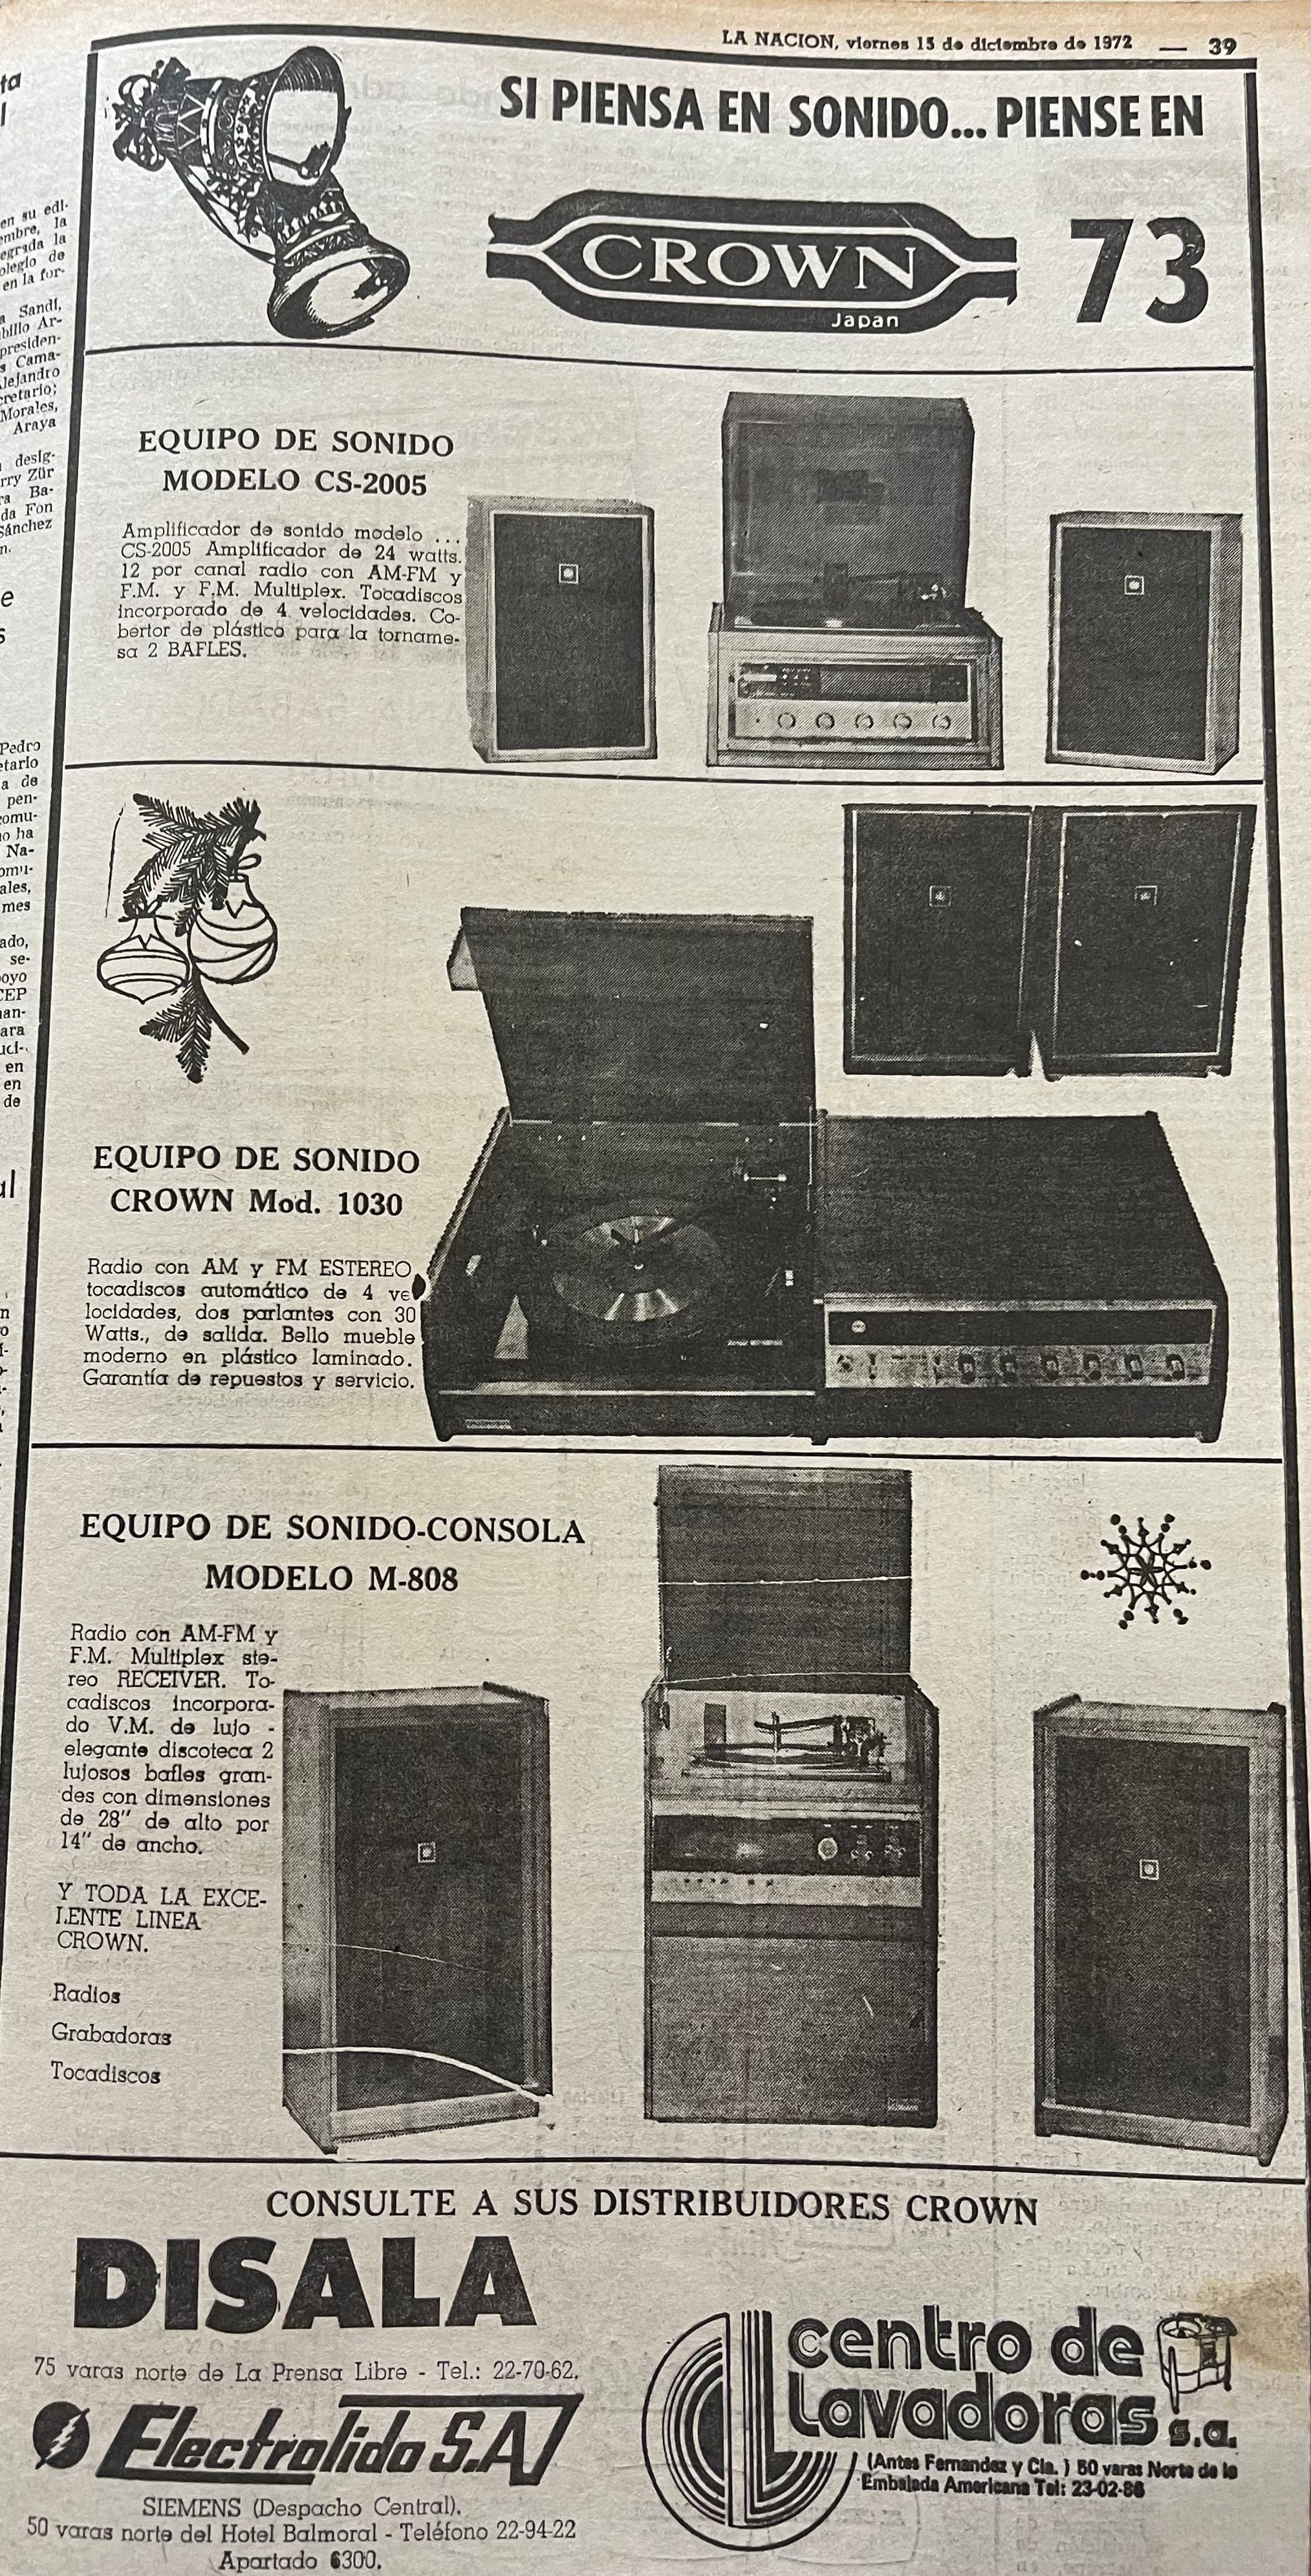 Crown era una reconocida marca para equipos de sonido y grabadoras de casette. 